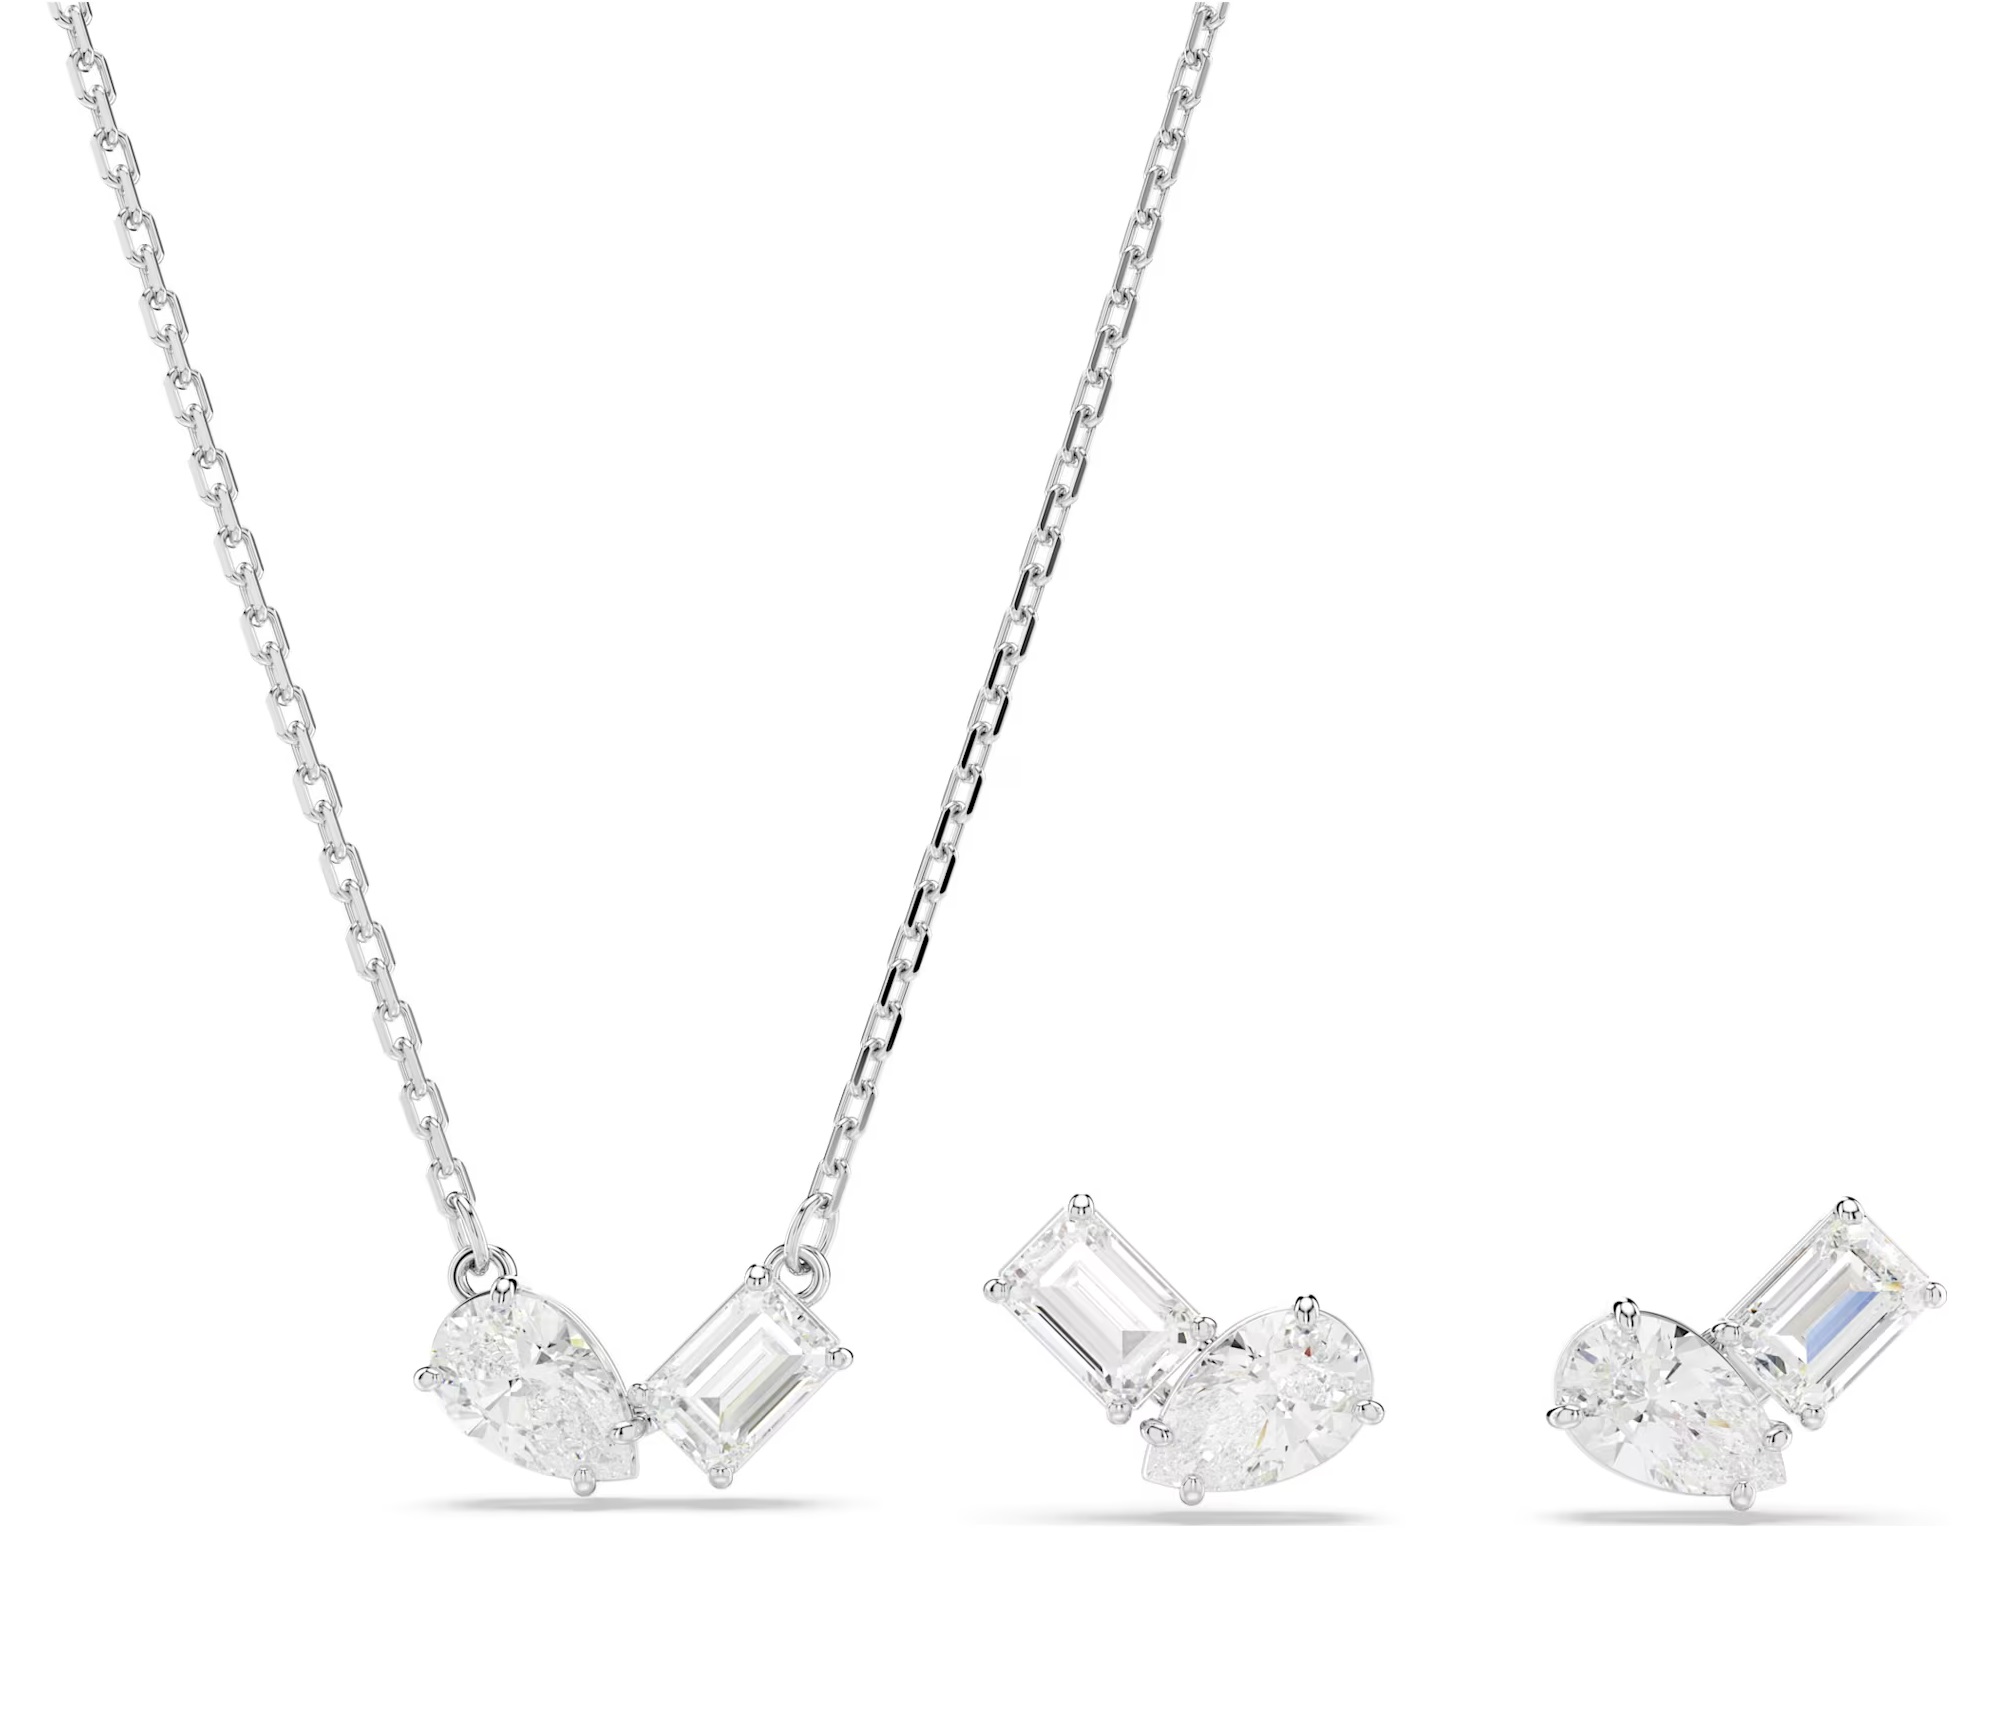 Swarovski Elegantní sada šperků s krystaly Mesmera 5665829 (náušnice, náhrdelník)